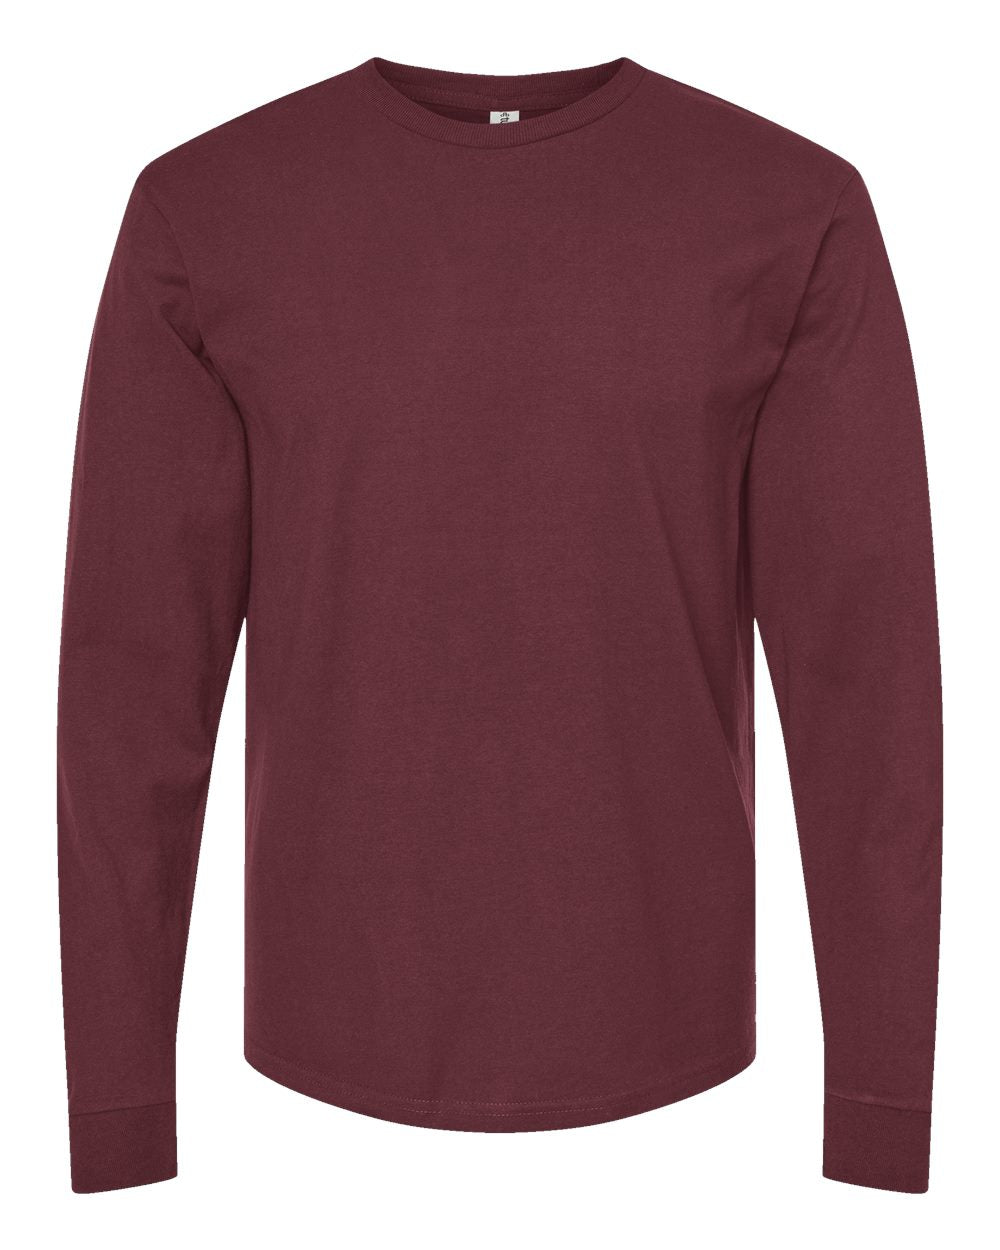 Tultex - Unisex Heavyweight Jersey Long Sleeve T-Shirt - 291